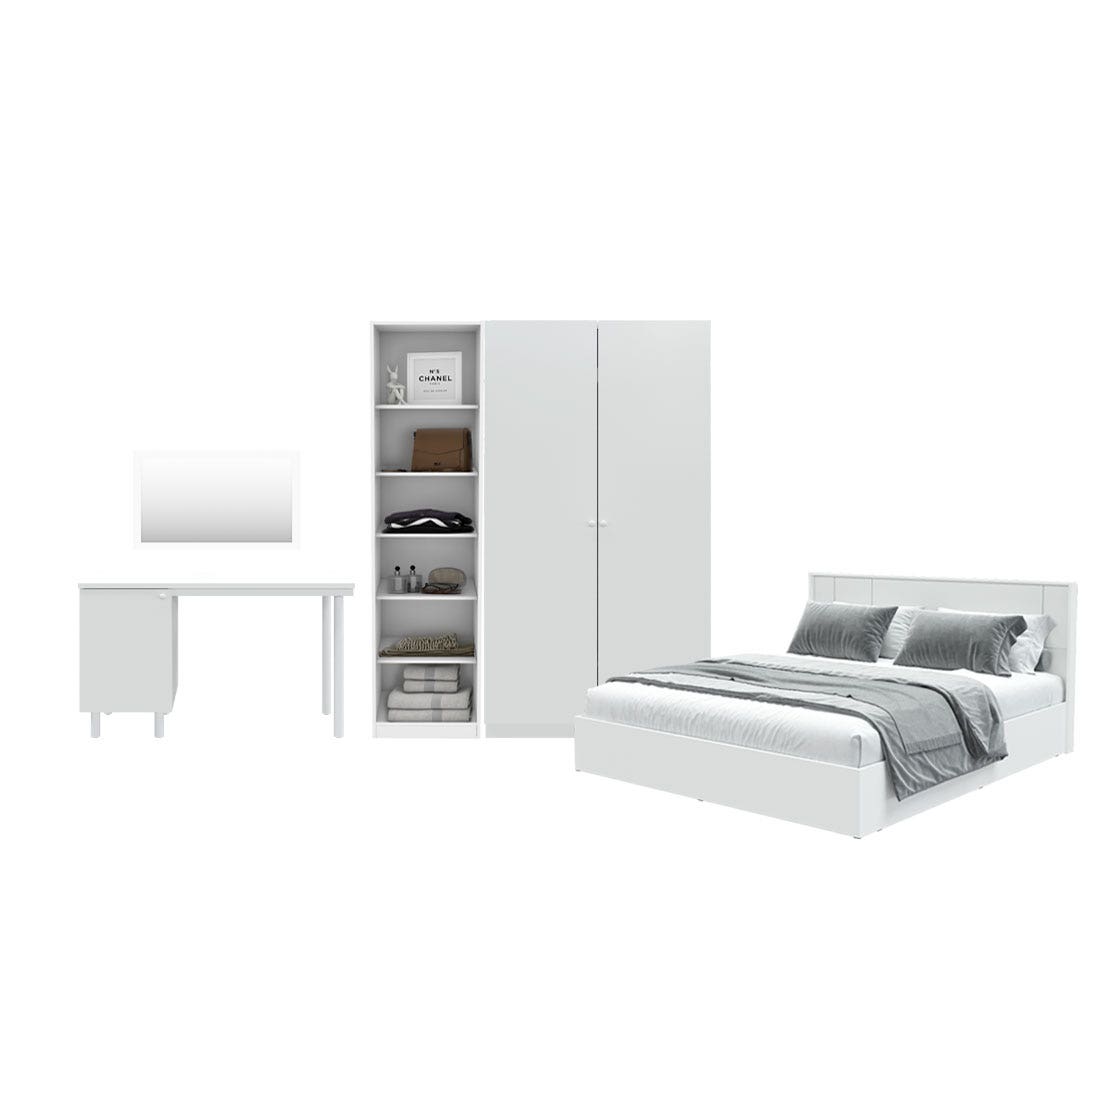 ชุดห้องนอน ขนาด 5 ฟุต รุ่น Pearliz และ ตู้ Blox ขนาด 150 ซม. พร้อมโต๊ะทำงาน สีขาว มิดกรอส01